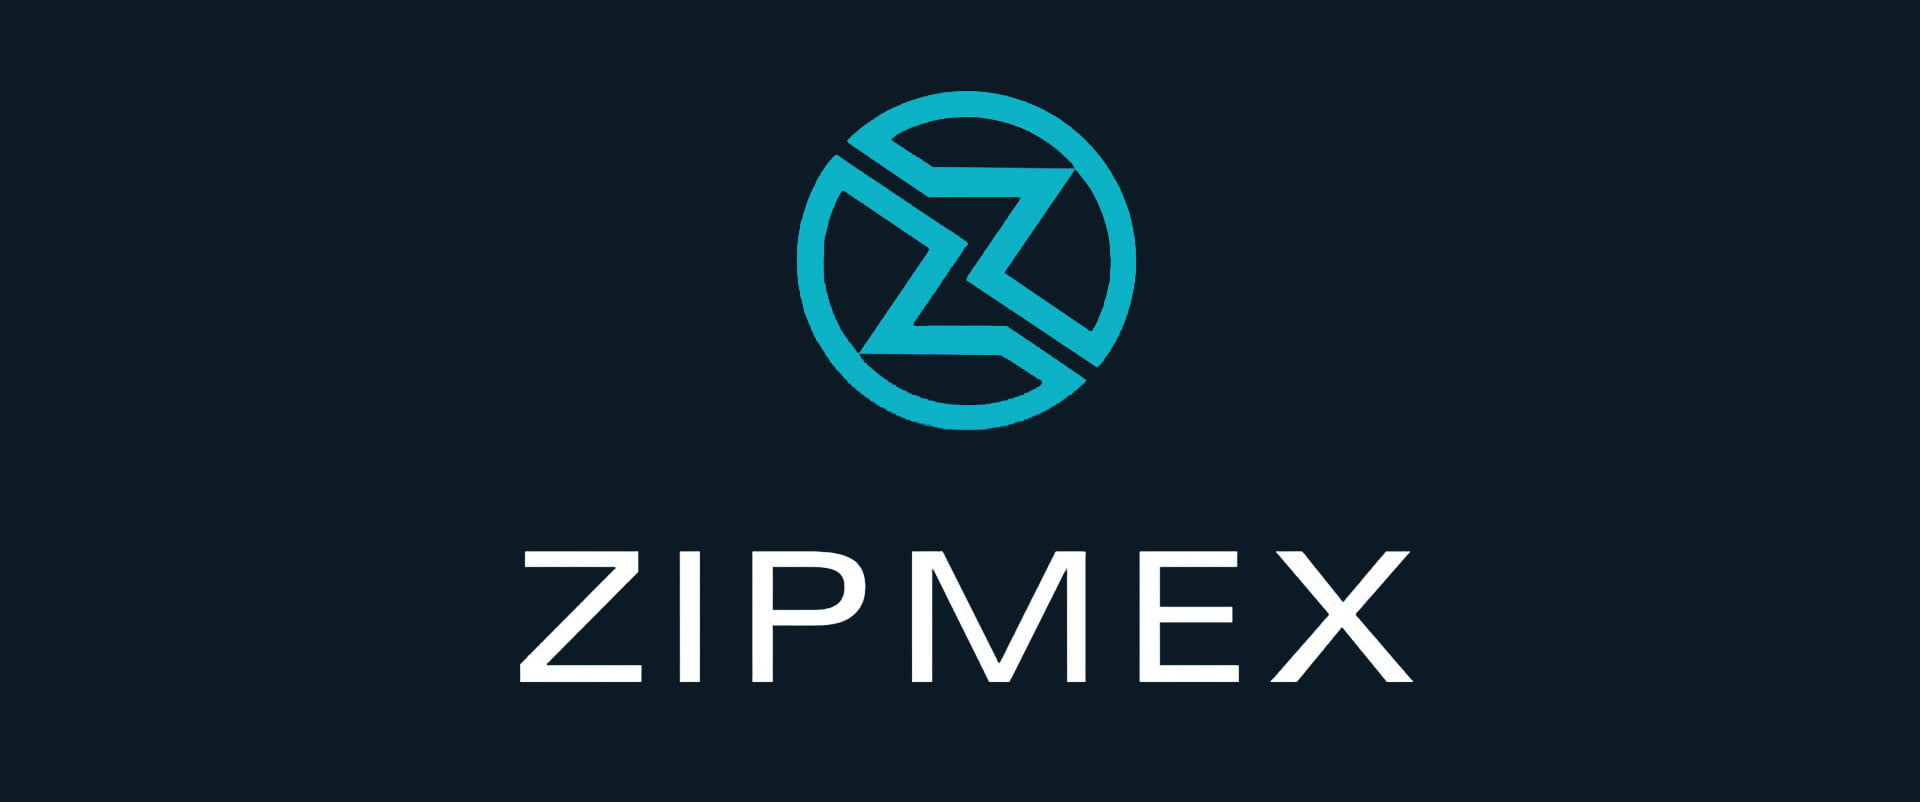 Биржа Zipmex разрешила пользователям вывести некоторые криптоактивы